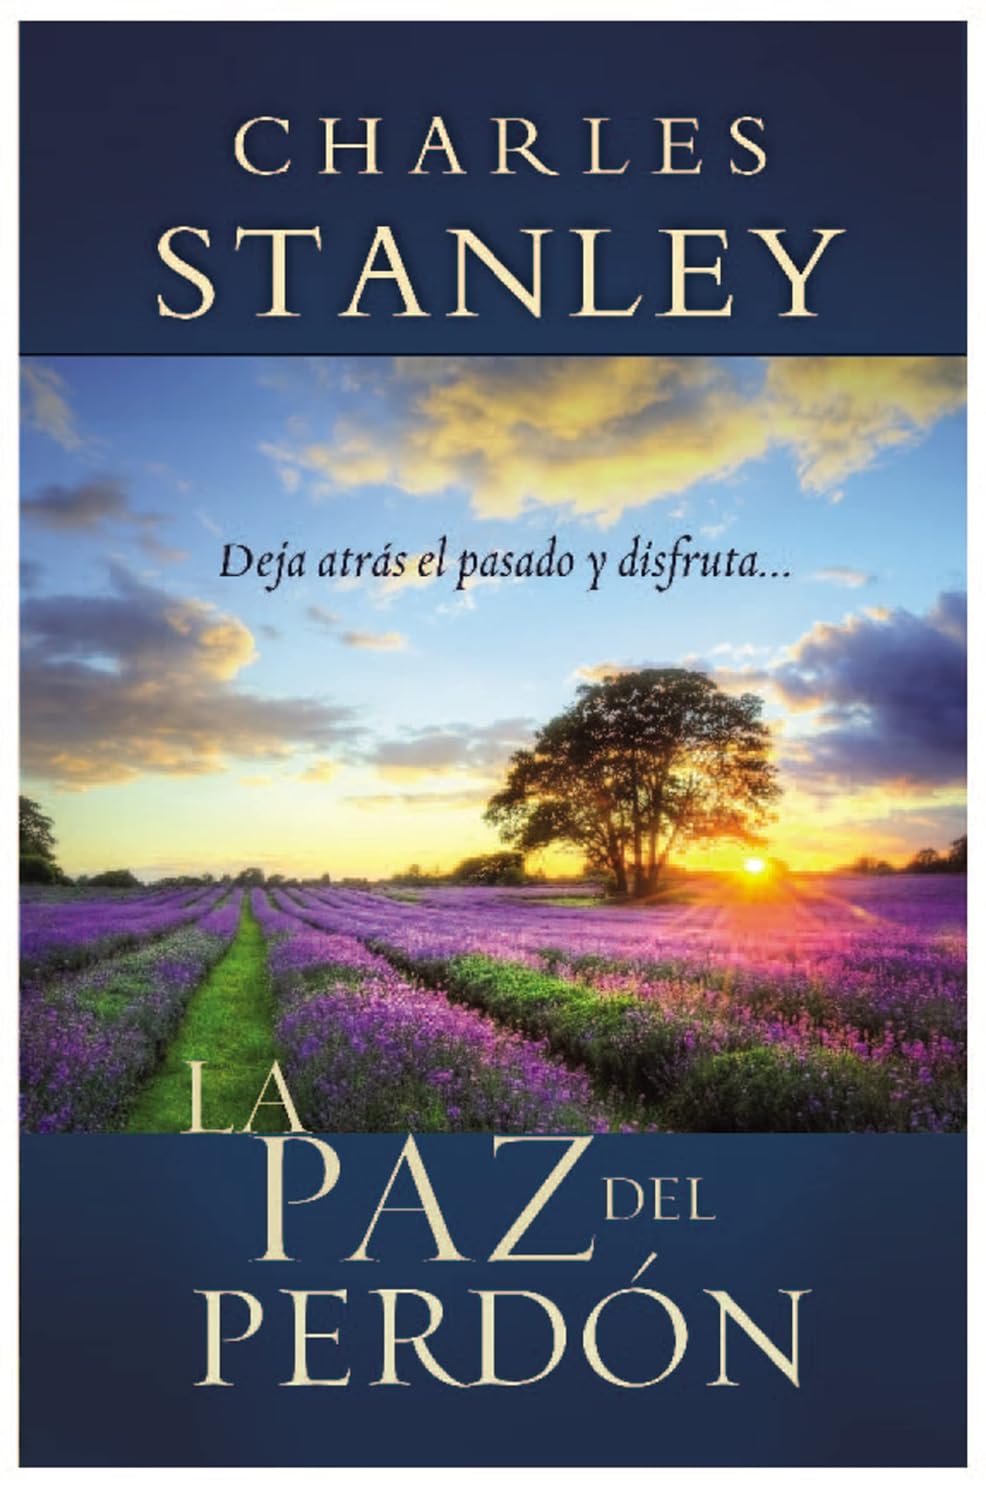 La paz del perdón (Spanish Edition) Paperback